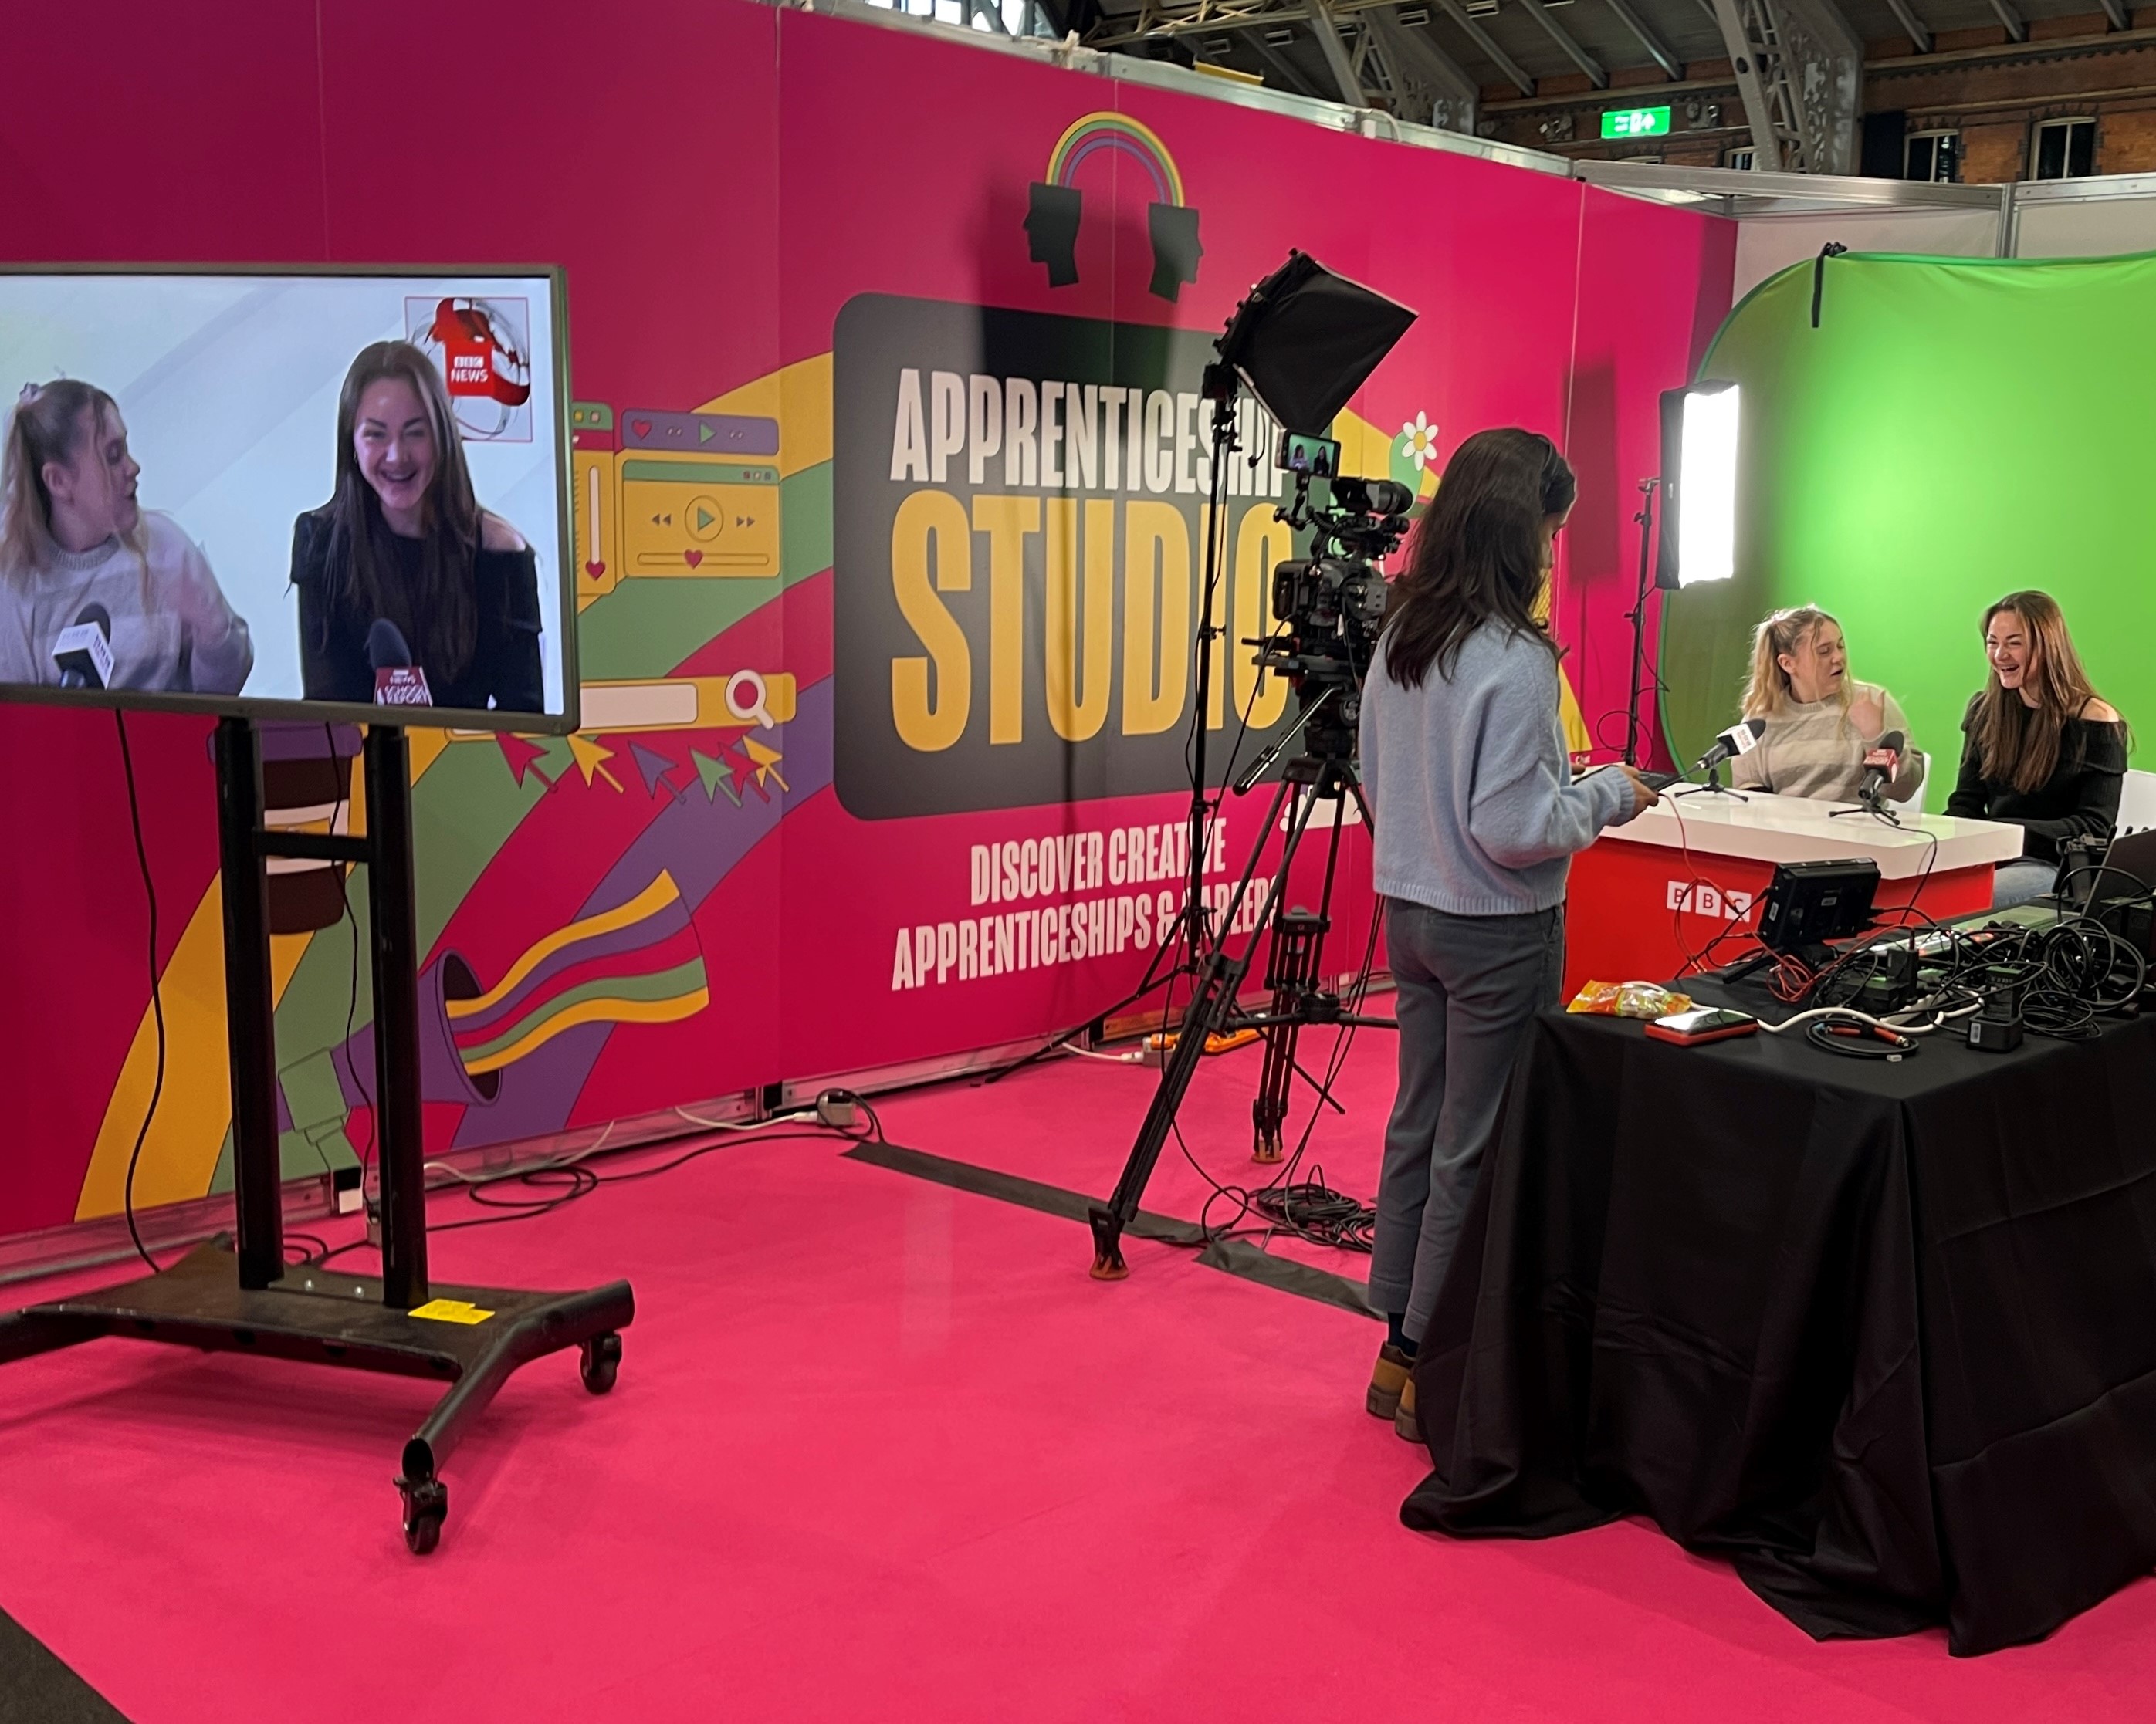 UCAS Apprenticeship Studio featuring the BBC interactive radio and tv studio experience